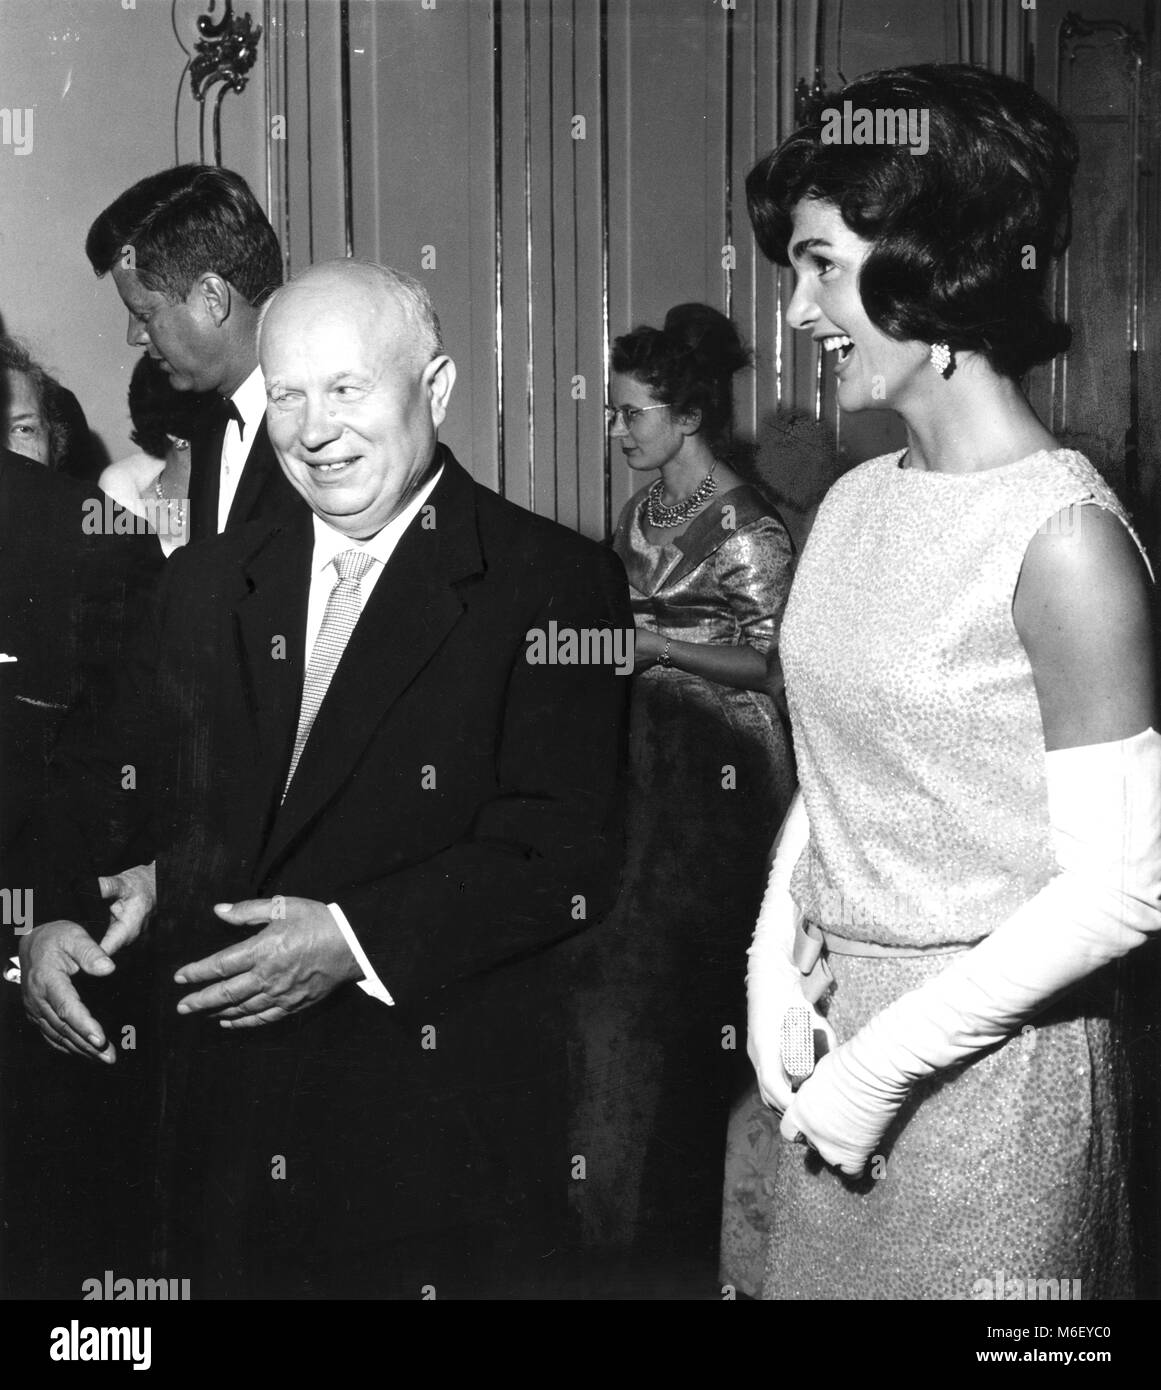 Frau Jacqueline Kennedy, der Frau des U S Präsident John F. Kennedy, und der sowjetische Regierungschef Nikita Chruschtschow ein Lachen in Schloss Schönbrunn, Wien, Österreich, 06.03.1961. Stockfoto